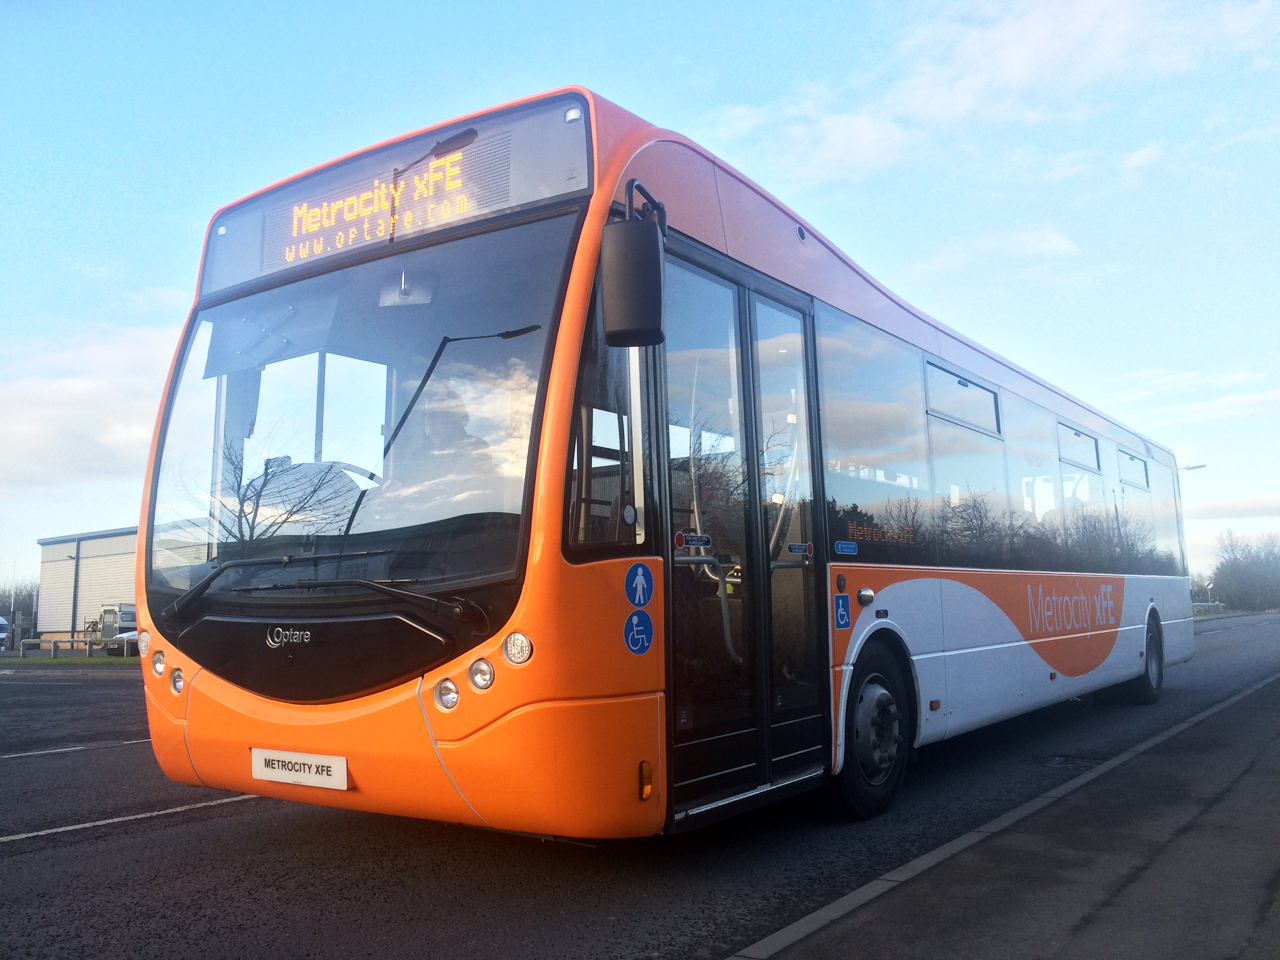 Az új Optare Metrocity xFE midi-busz, amelyet hagyományos dízelmotorral szereltek fel, de az Allison sebességváltóval megszerezte a LEB-tanúsítást (fotók: Allison Transmission)